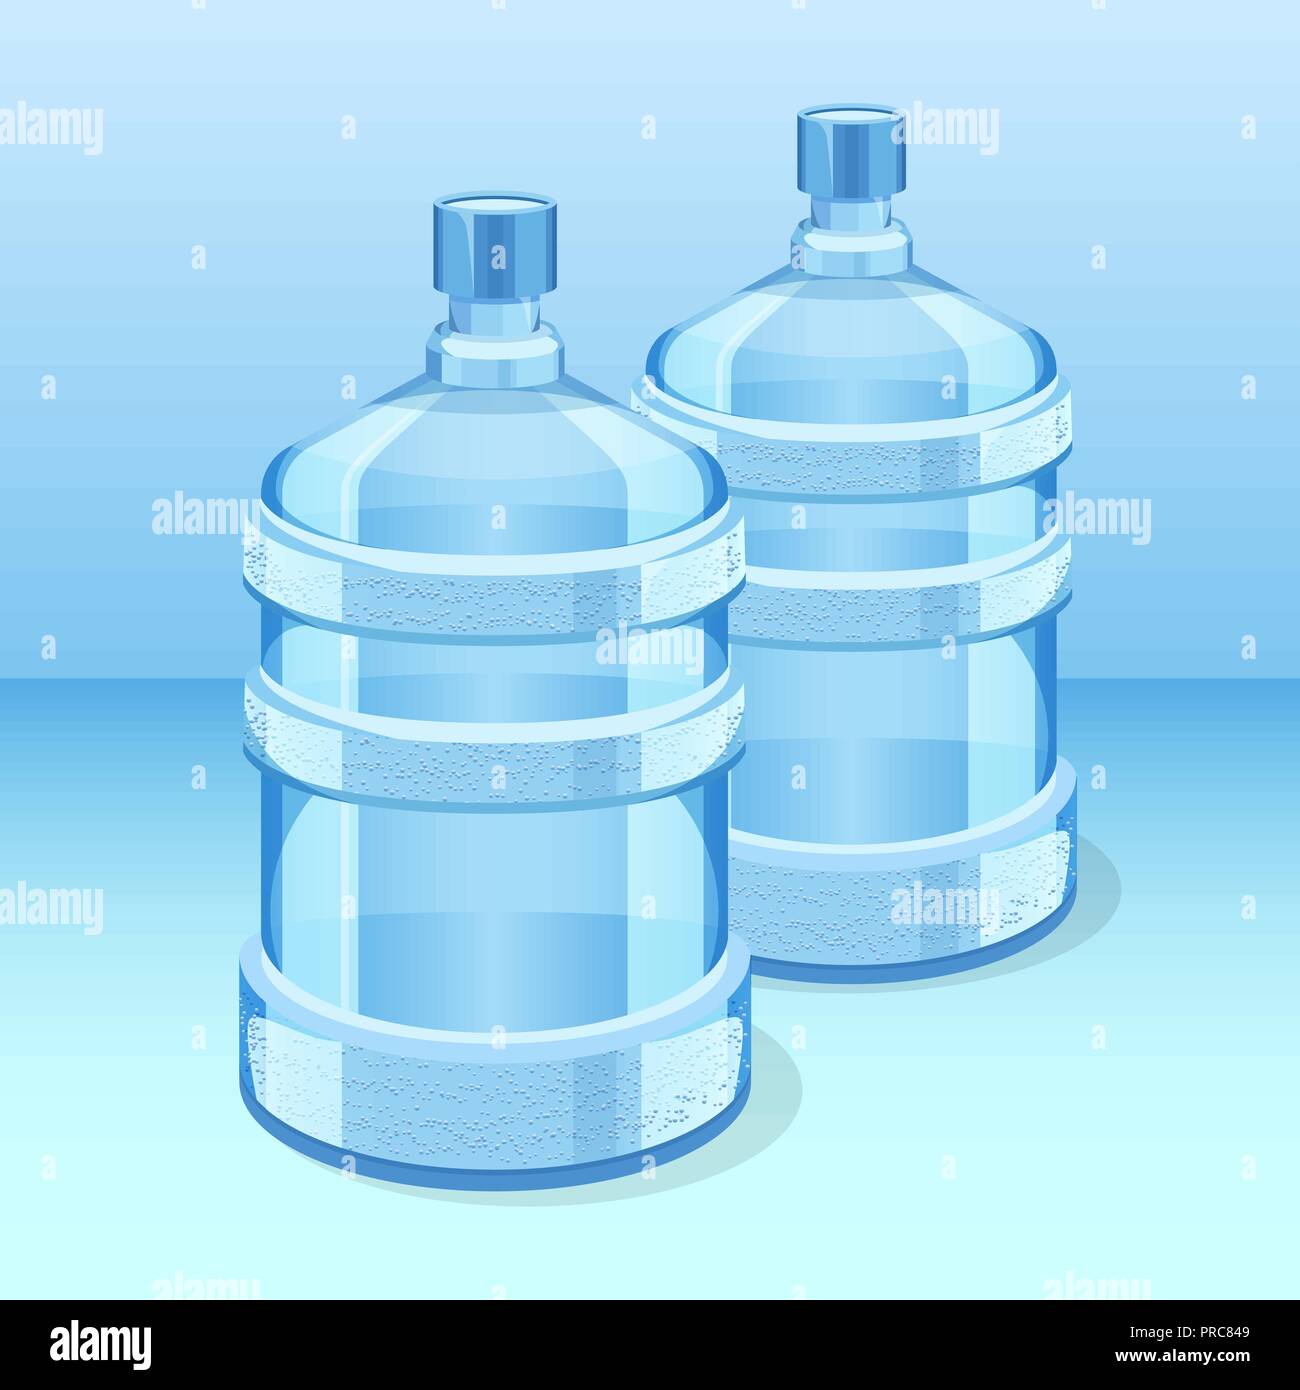 Deux bouteilles en plastique réaliste pour l'office de refroidisseur d'eau Illustration de Vecteur